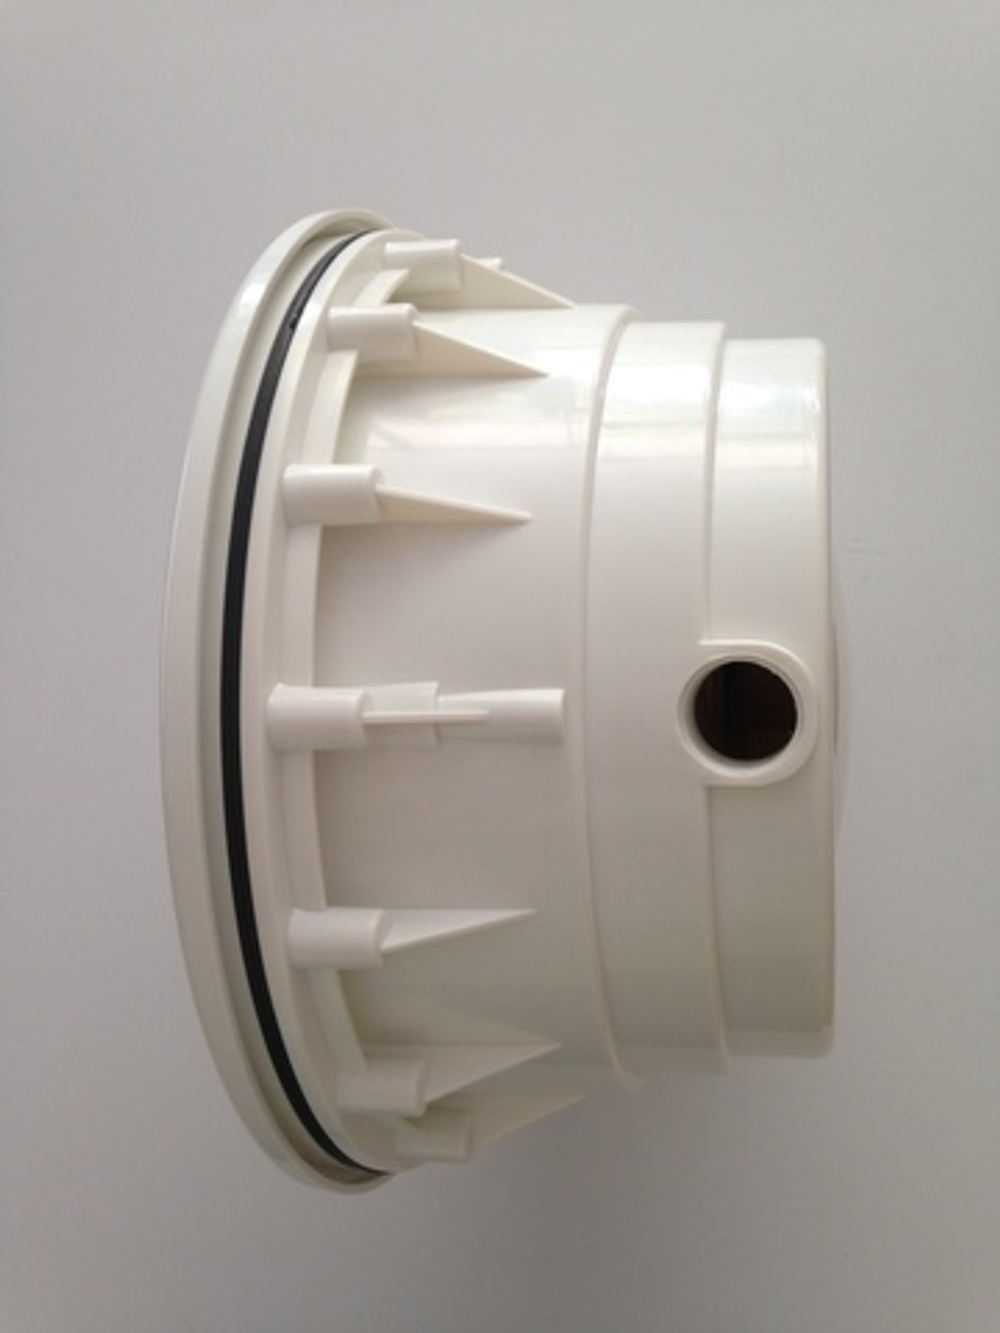 Корпус светильника для бассейна без лампы универсальный - PAR56, ABS-пластик, винт. соединение - NPN300V - Hidrotermal